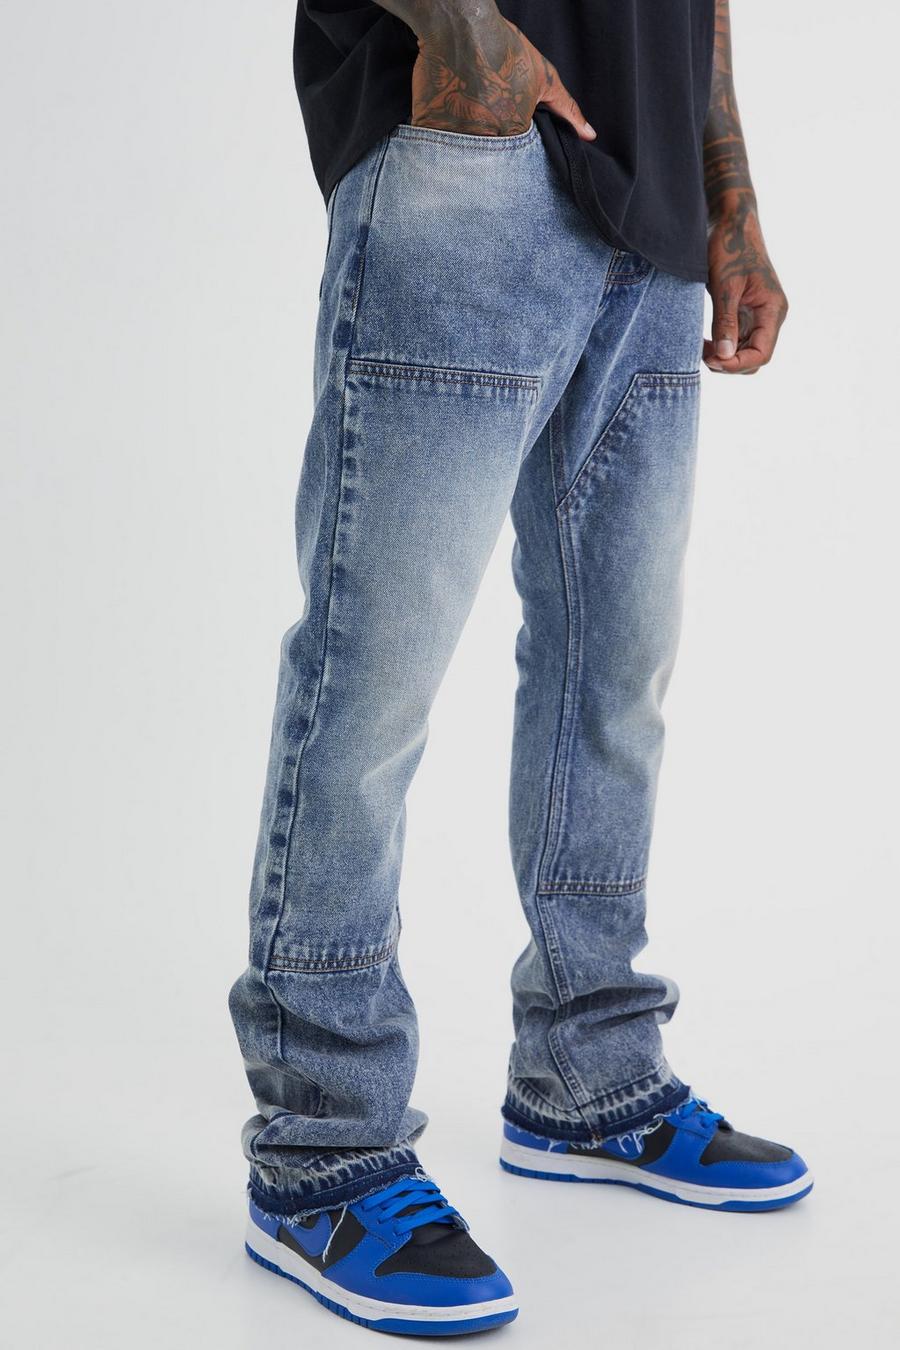 Jeans a zampa Slim Fit in denim rigido stile Carpenter, Antique wash